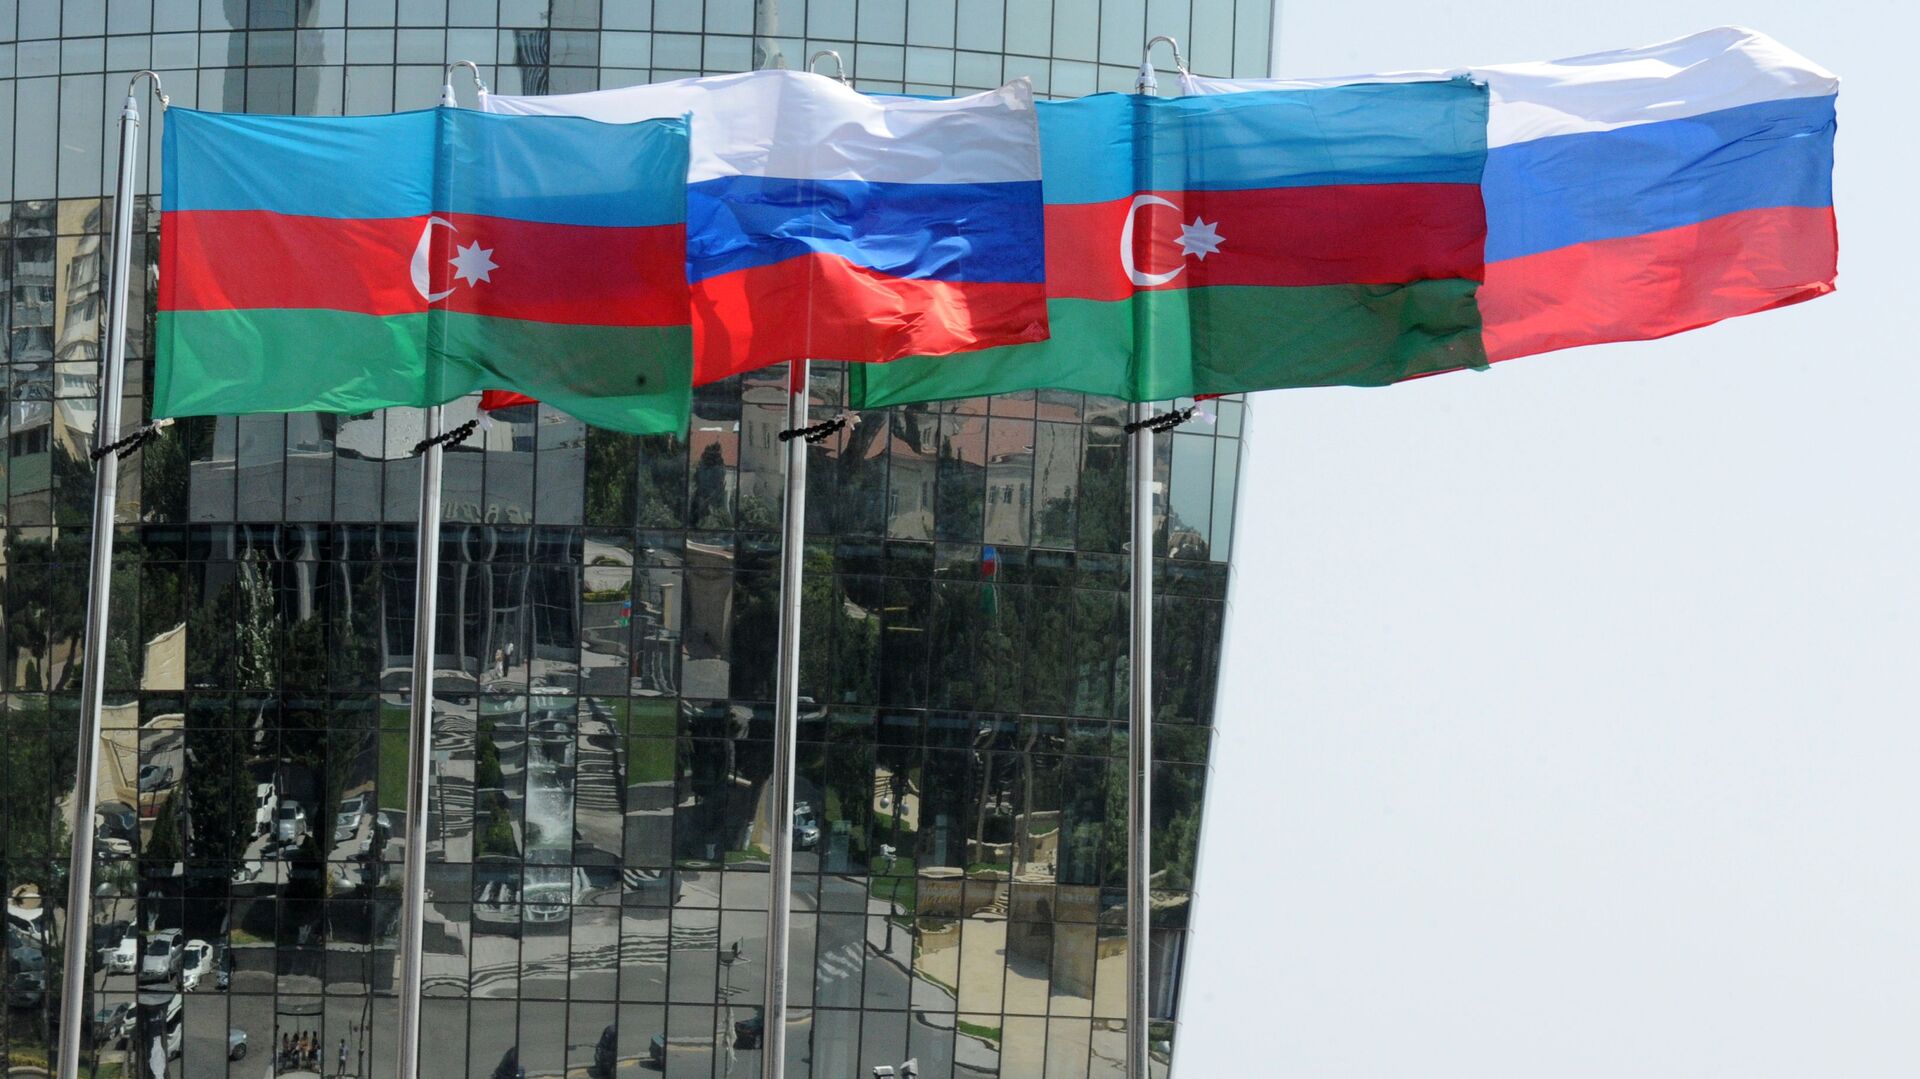 Национальные флаги России и Азербайджана на фоне фасада одной из башен Башни Пламени (Flame Towers) в Баку - Sputnik Azərbaycan, 1920, 25.03.2021